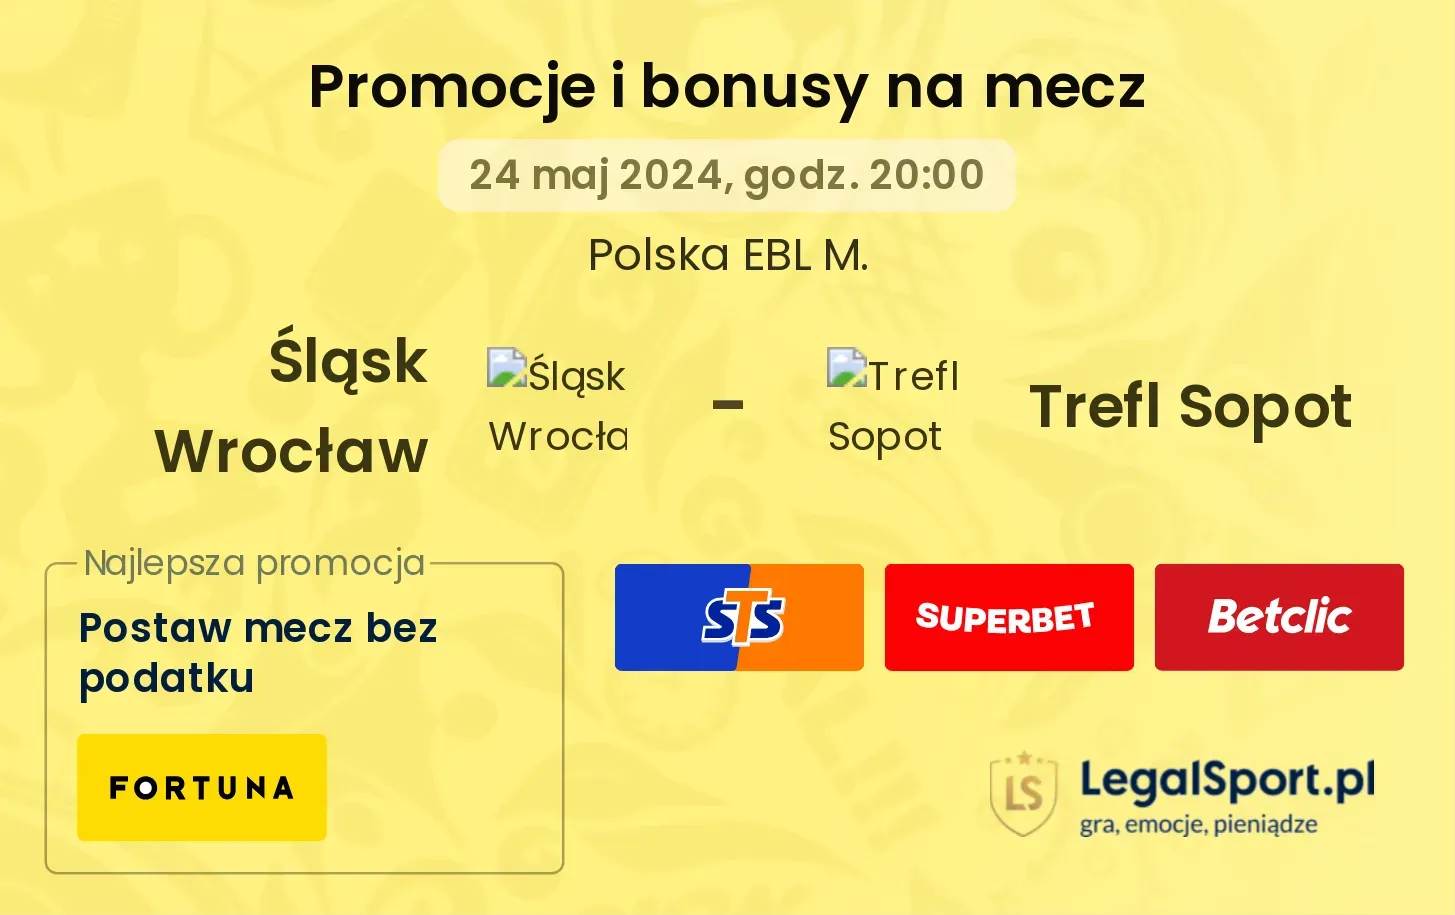 Śląsk Wrocław - Trefl Sopot promocje bonusy na mecz